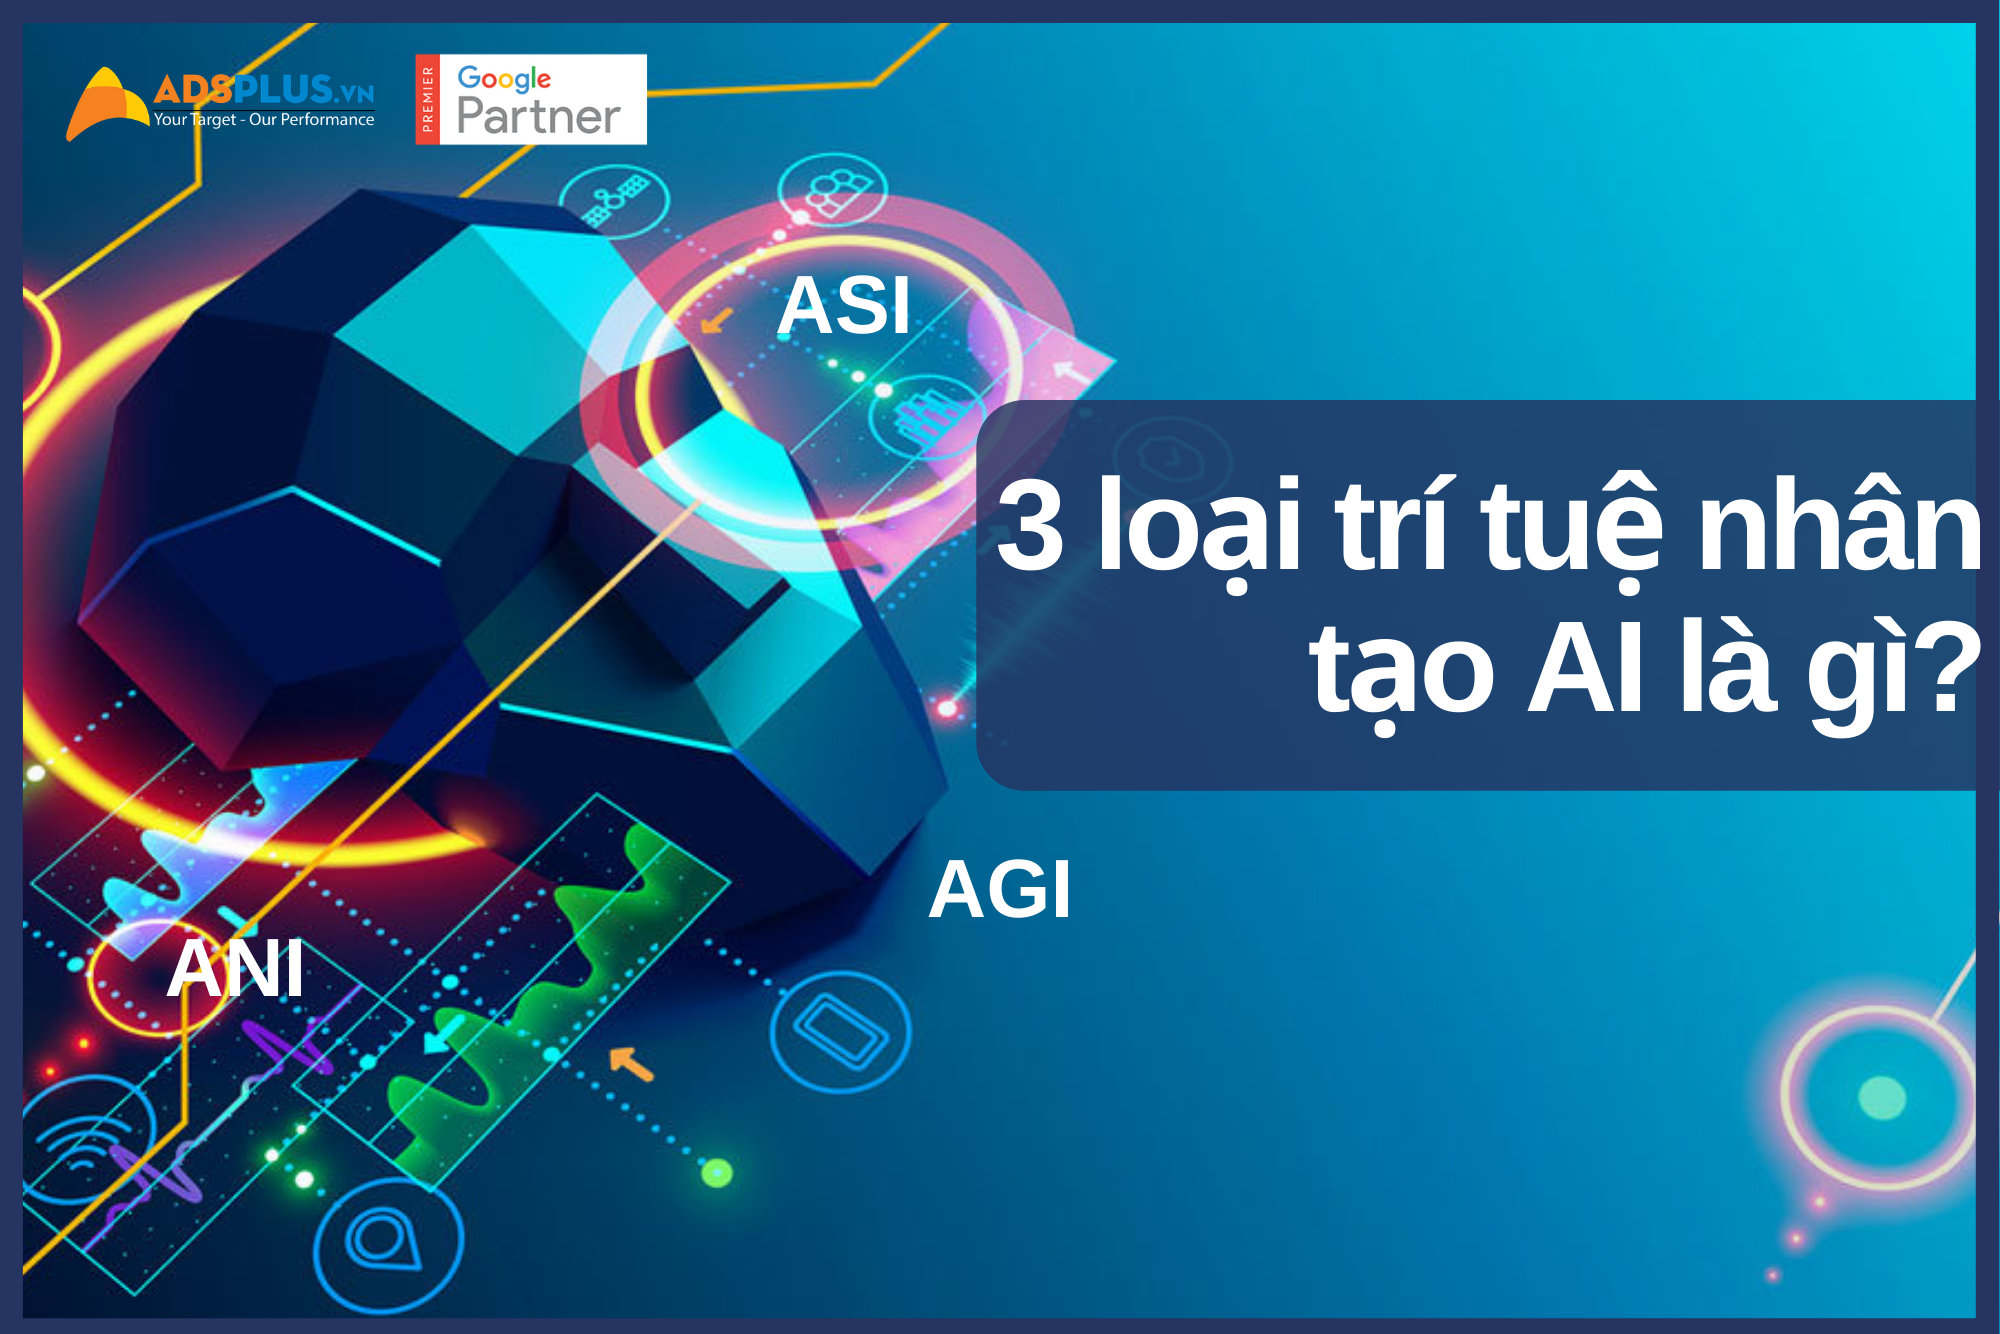 3 loại trí tuệ nhân tạo AI là gì? ANI (hẹp), AGI (tổng quát) và ASI (siêu nhân tạo)